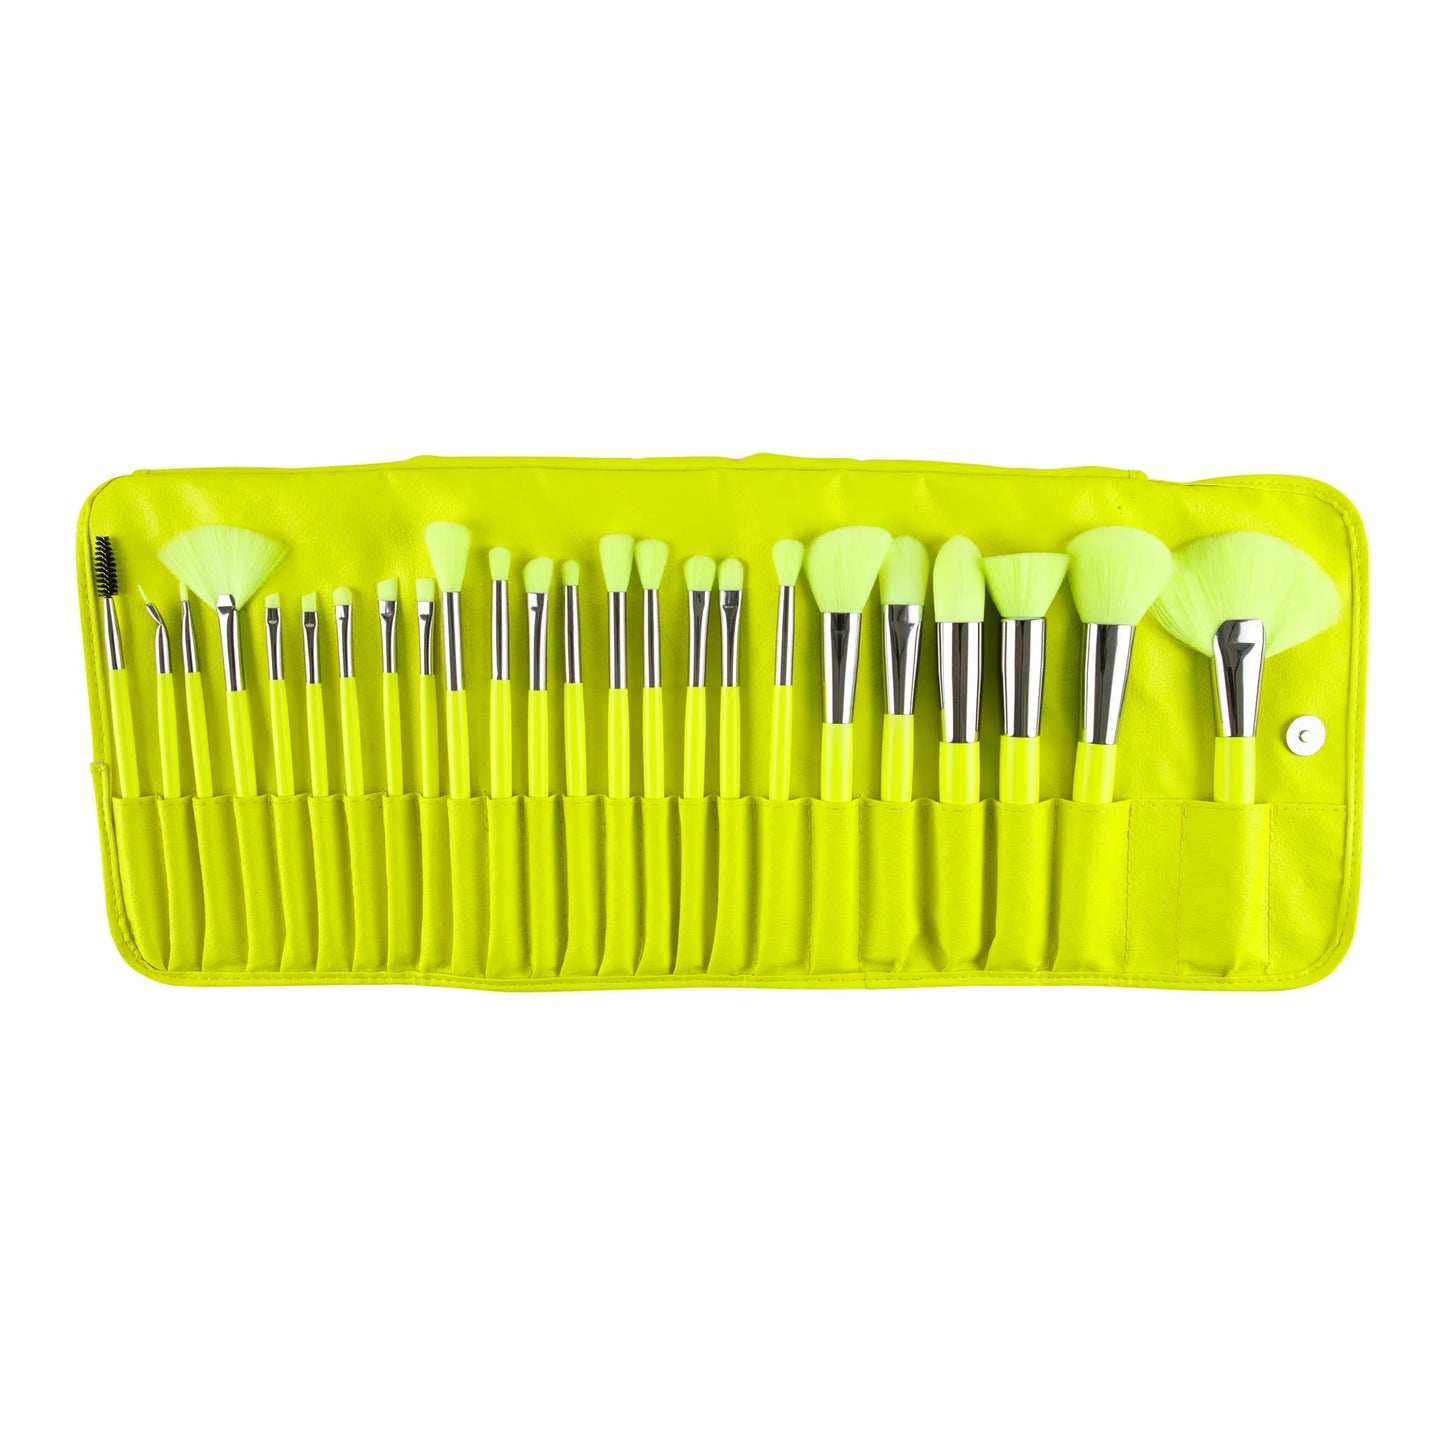 B24NY 24pc Brush Set - Neon Yellow